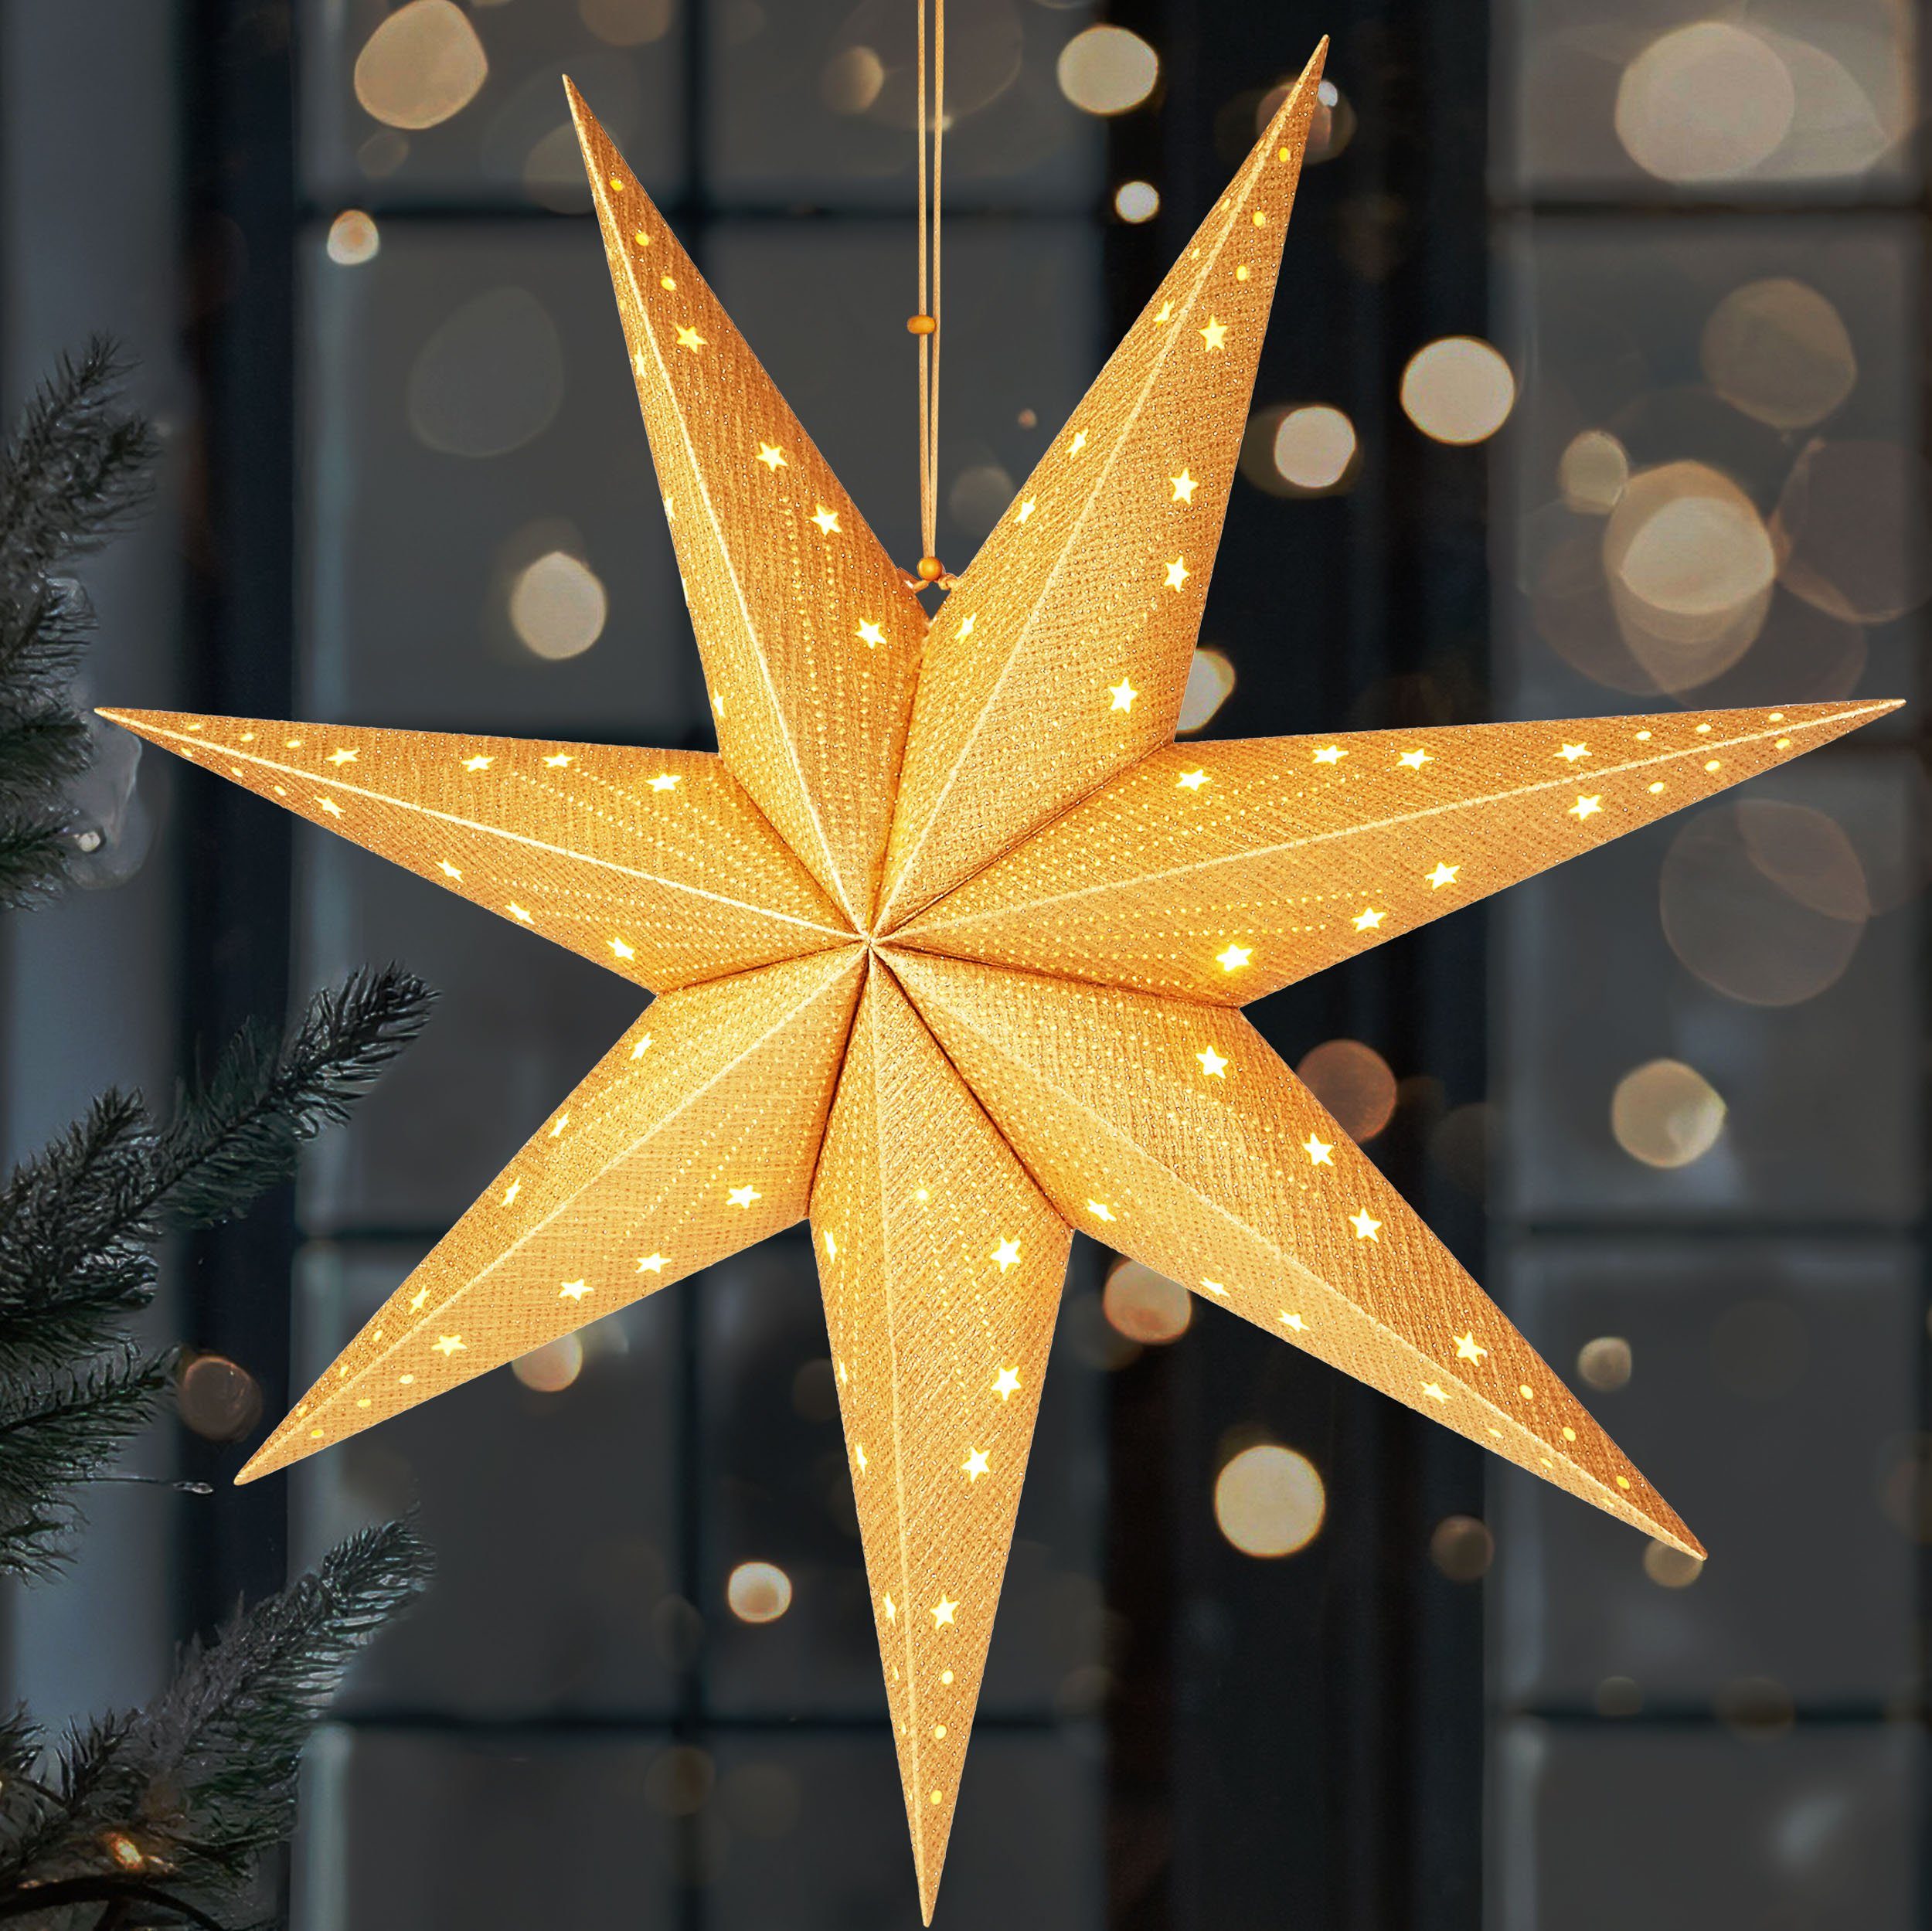 BRUBAKER LED Stern Weihnachtsstern zum Aufhängen - 60 cm Papierstern mit 7 Spitzen, Batteriebetrieben, Hängend und Beleuchtet, LED fest integriert, Warmweiß, 3D Adventsstern - Fenster Deko Leuchtstern Gold